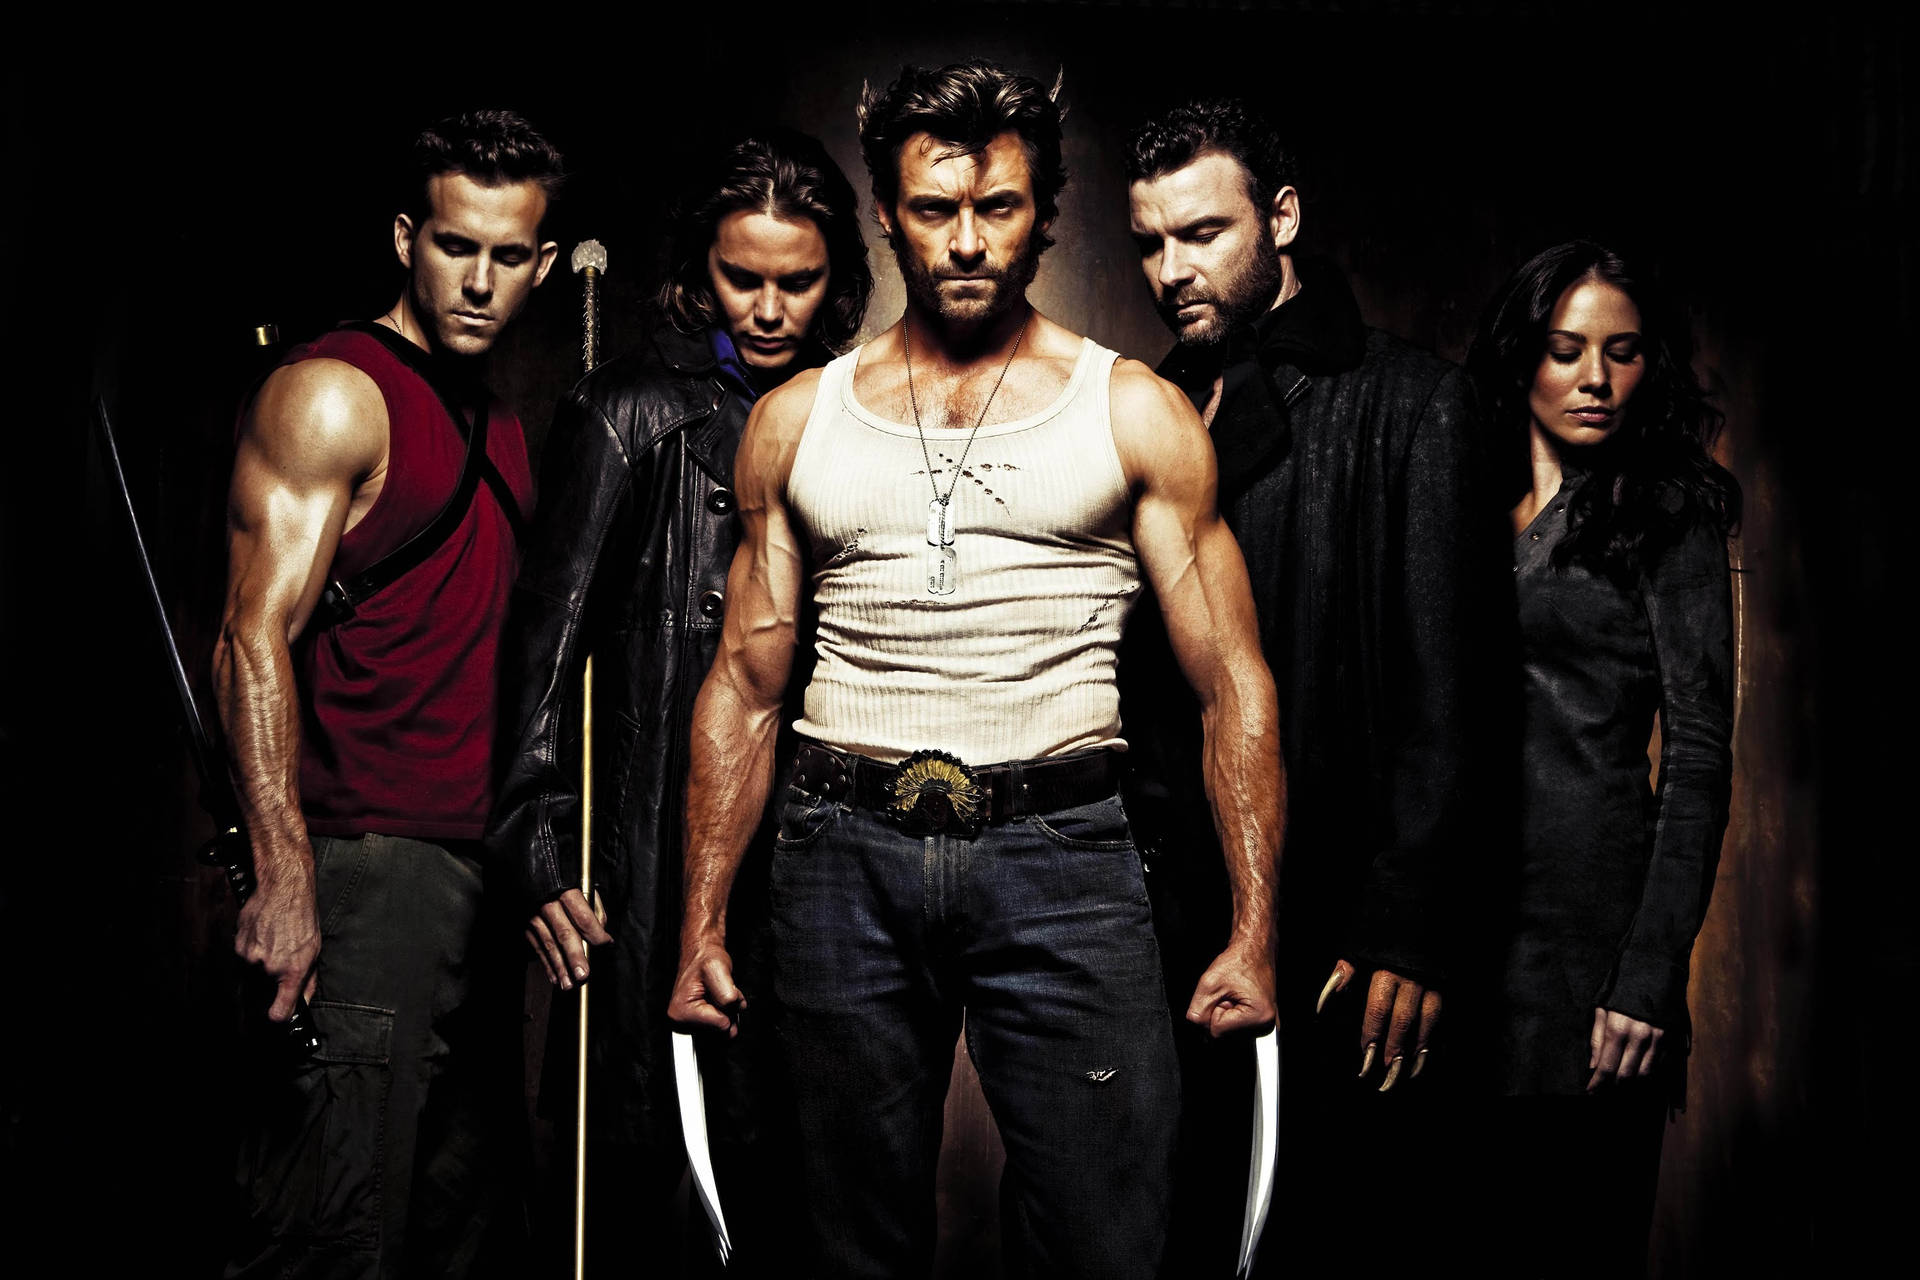 Personajede La Película X-men: Wolverine Fondo de pantalla